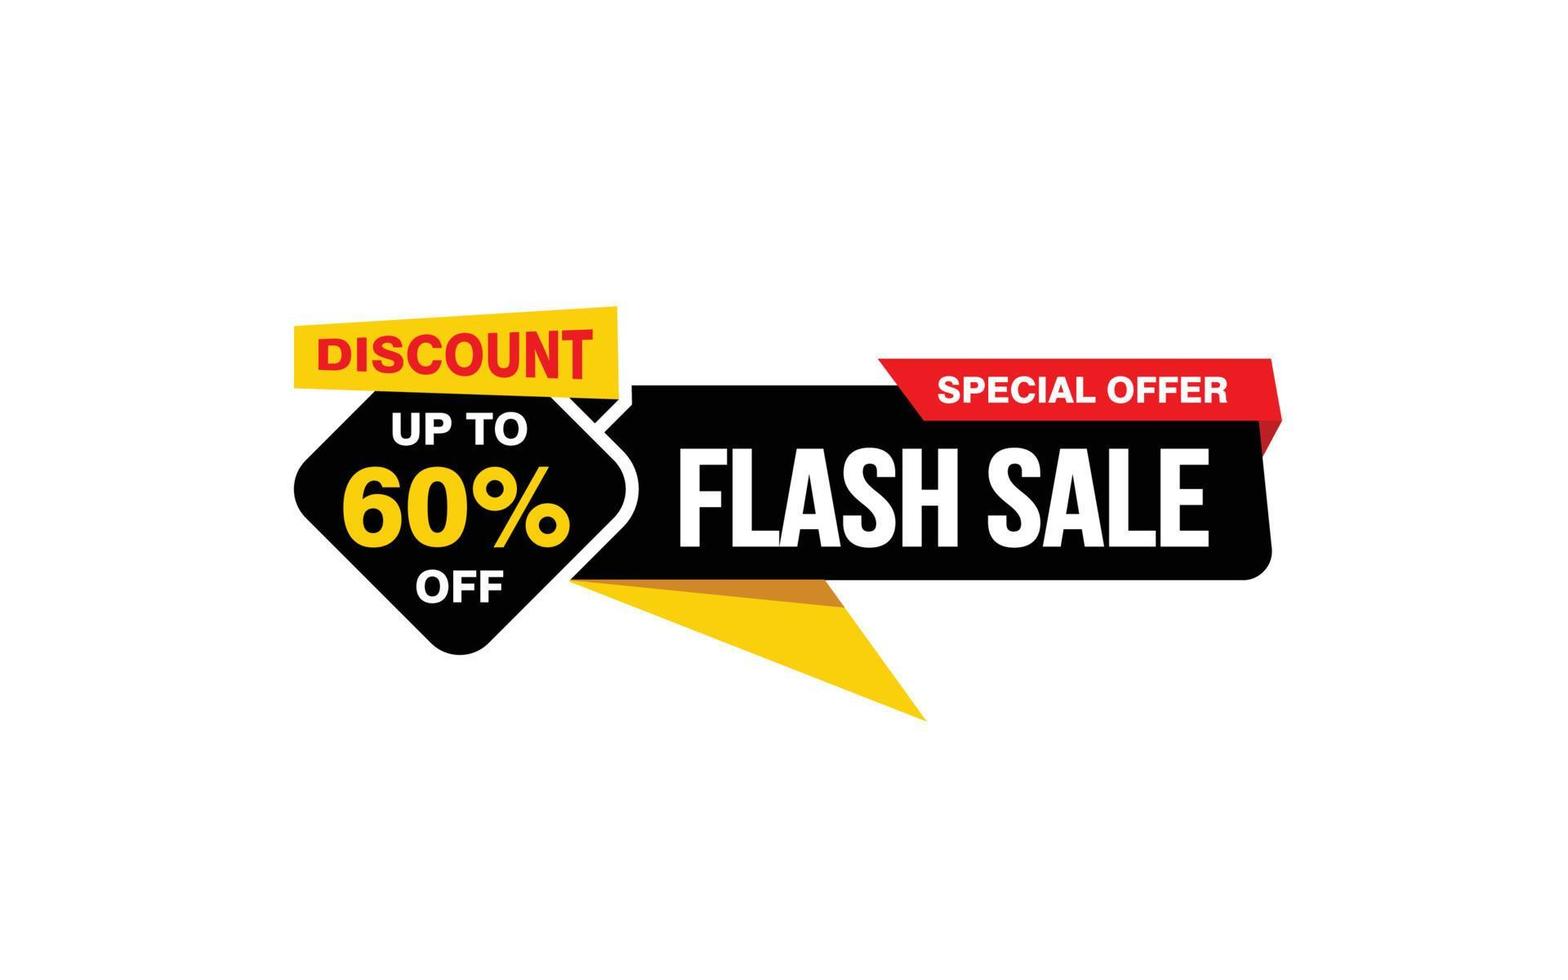 Oferta de venta flash del 60 por ciento, liquidación, diseño de banner de promoción con estilo de etiqueta. vector